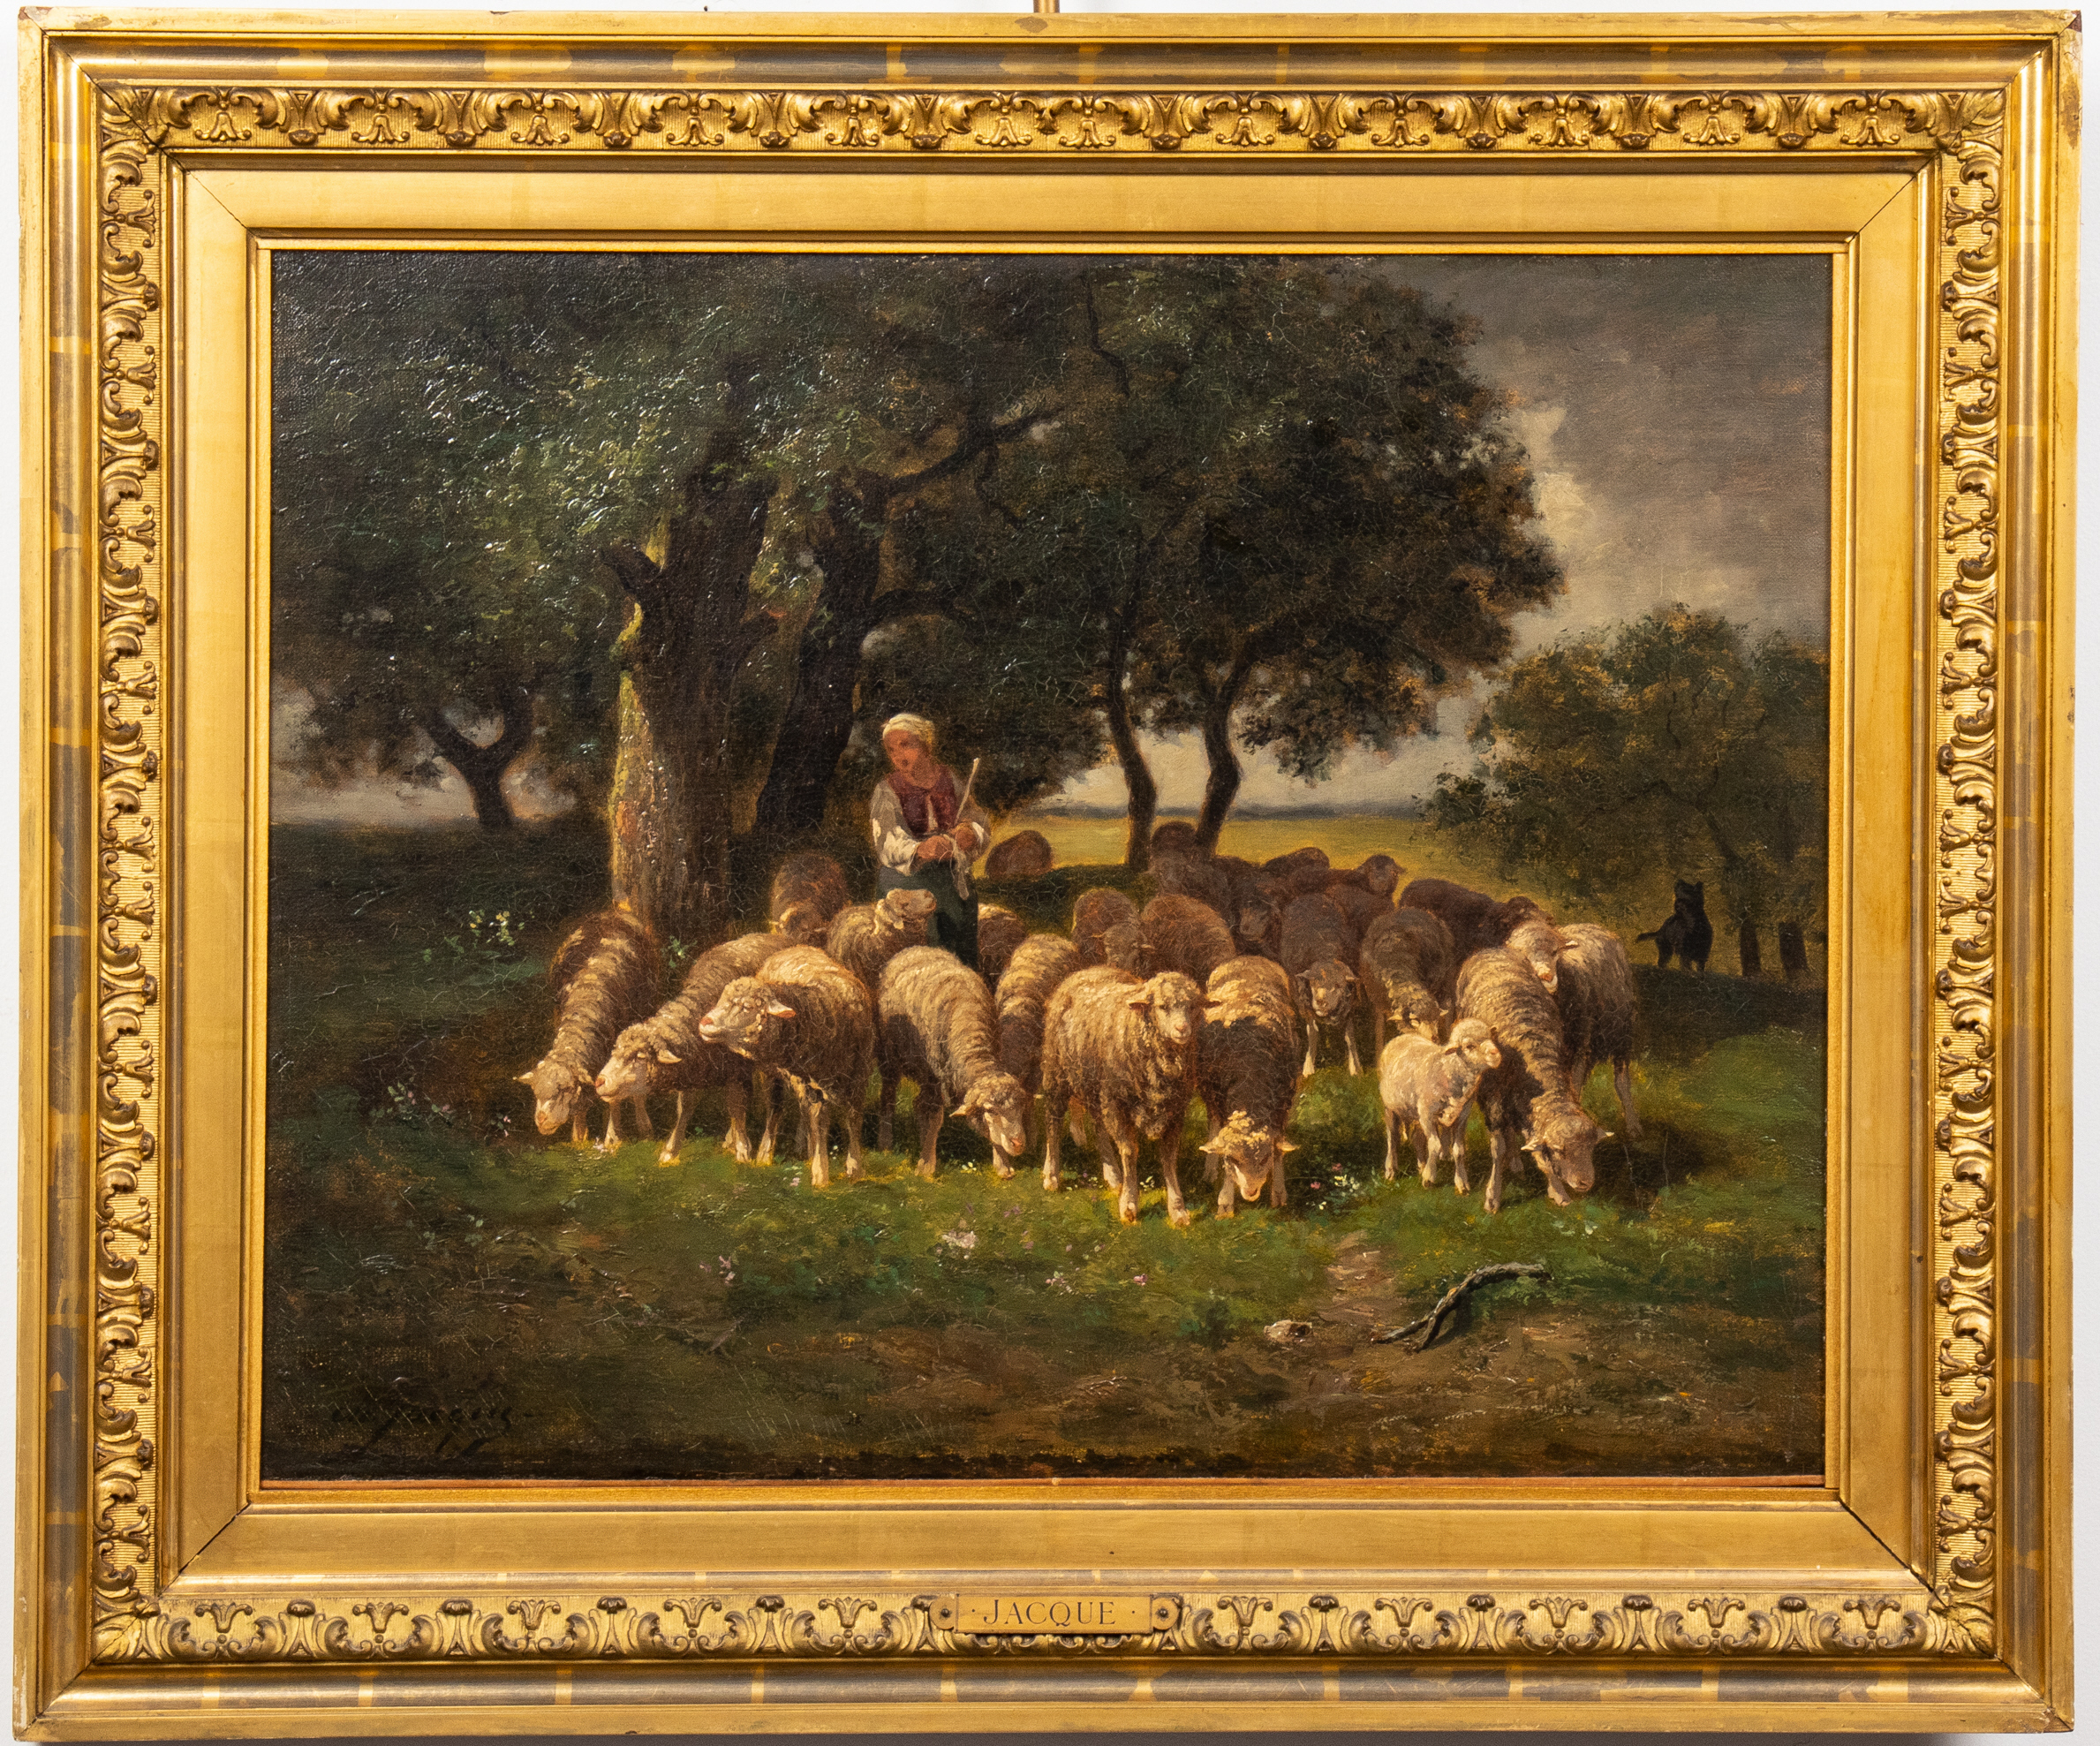 CHARLES EMILE JACQUE "THE SHEPHERDESS"